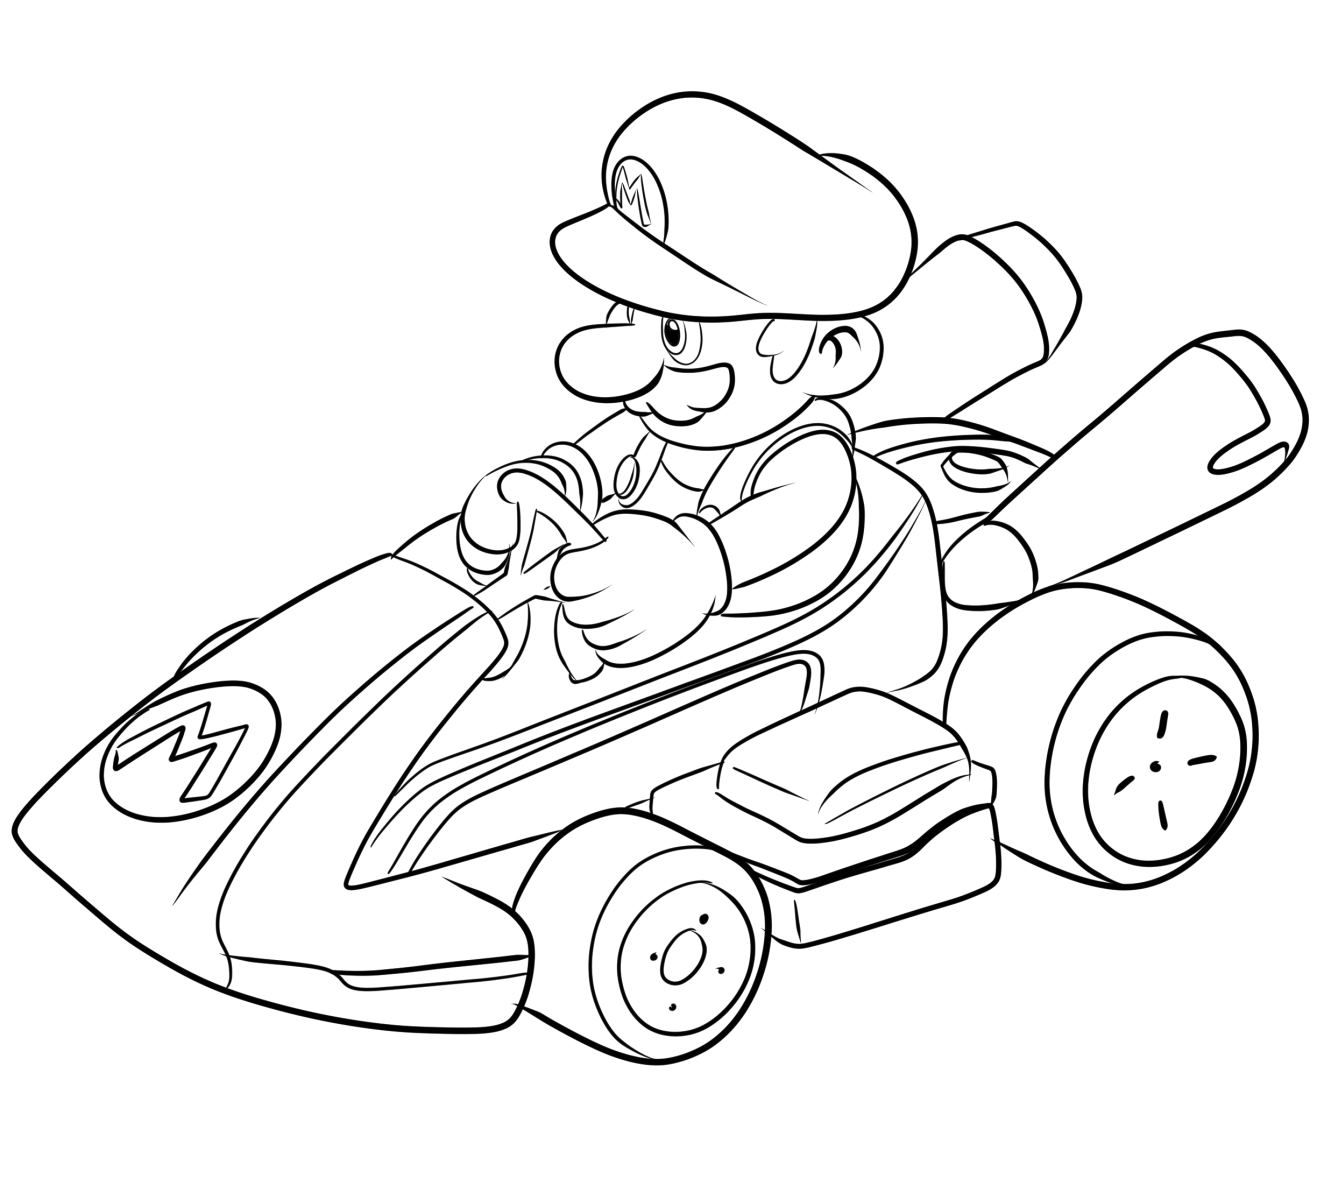 Dibujo 05 de Mario Kart para imprimir y colorear